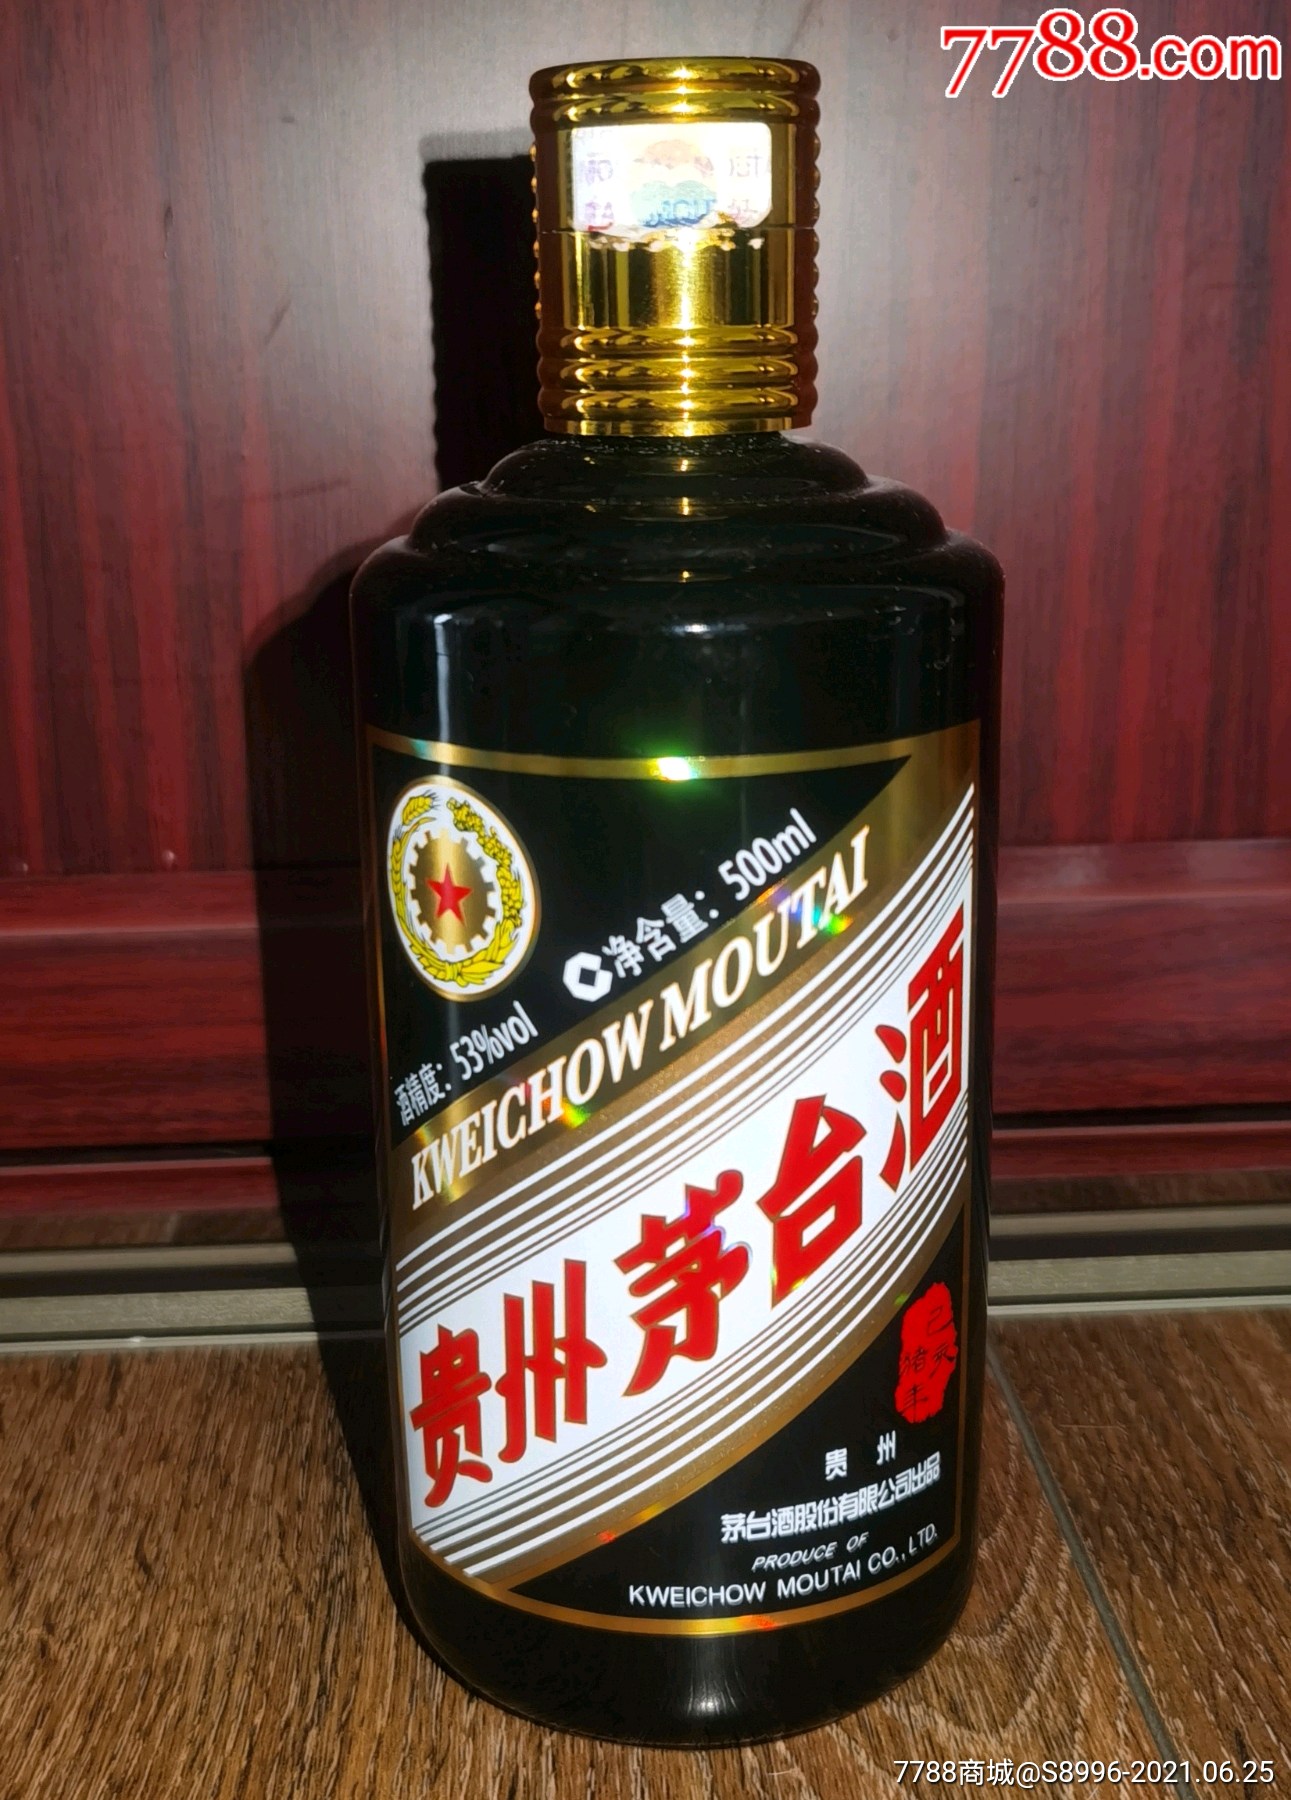 商品名称53五星贵州茅台酒生肖纪念版500ml瓶猪空瓶